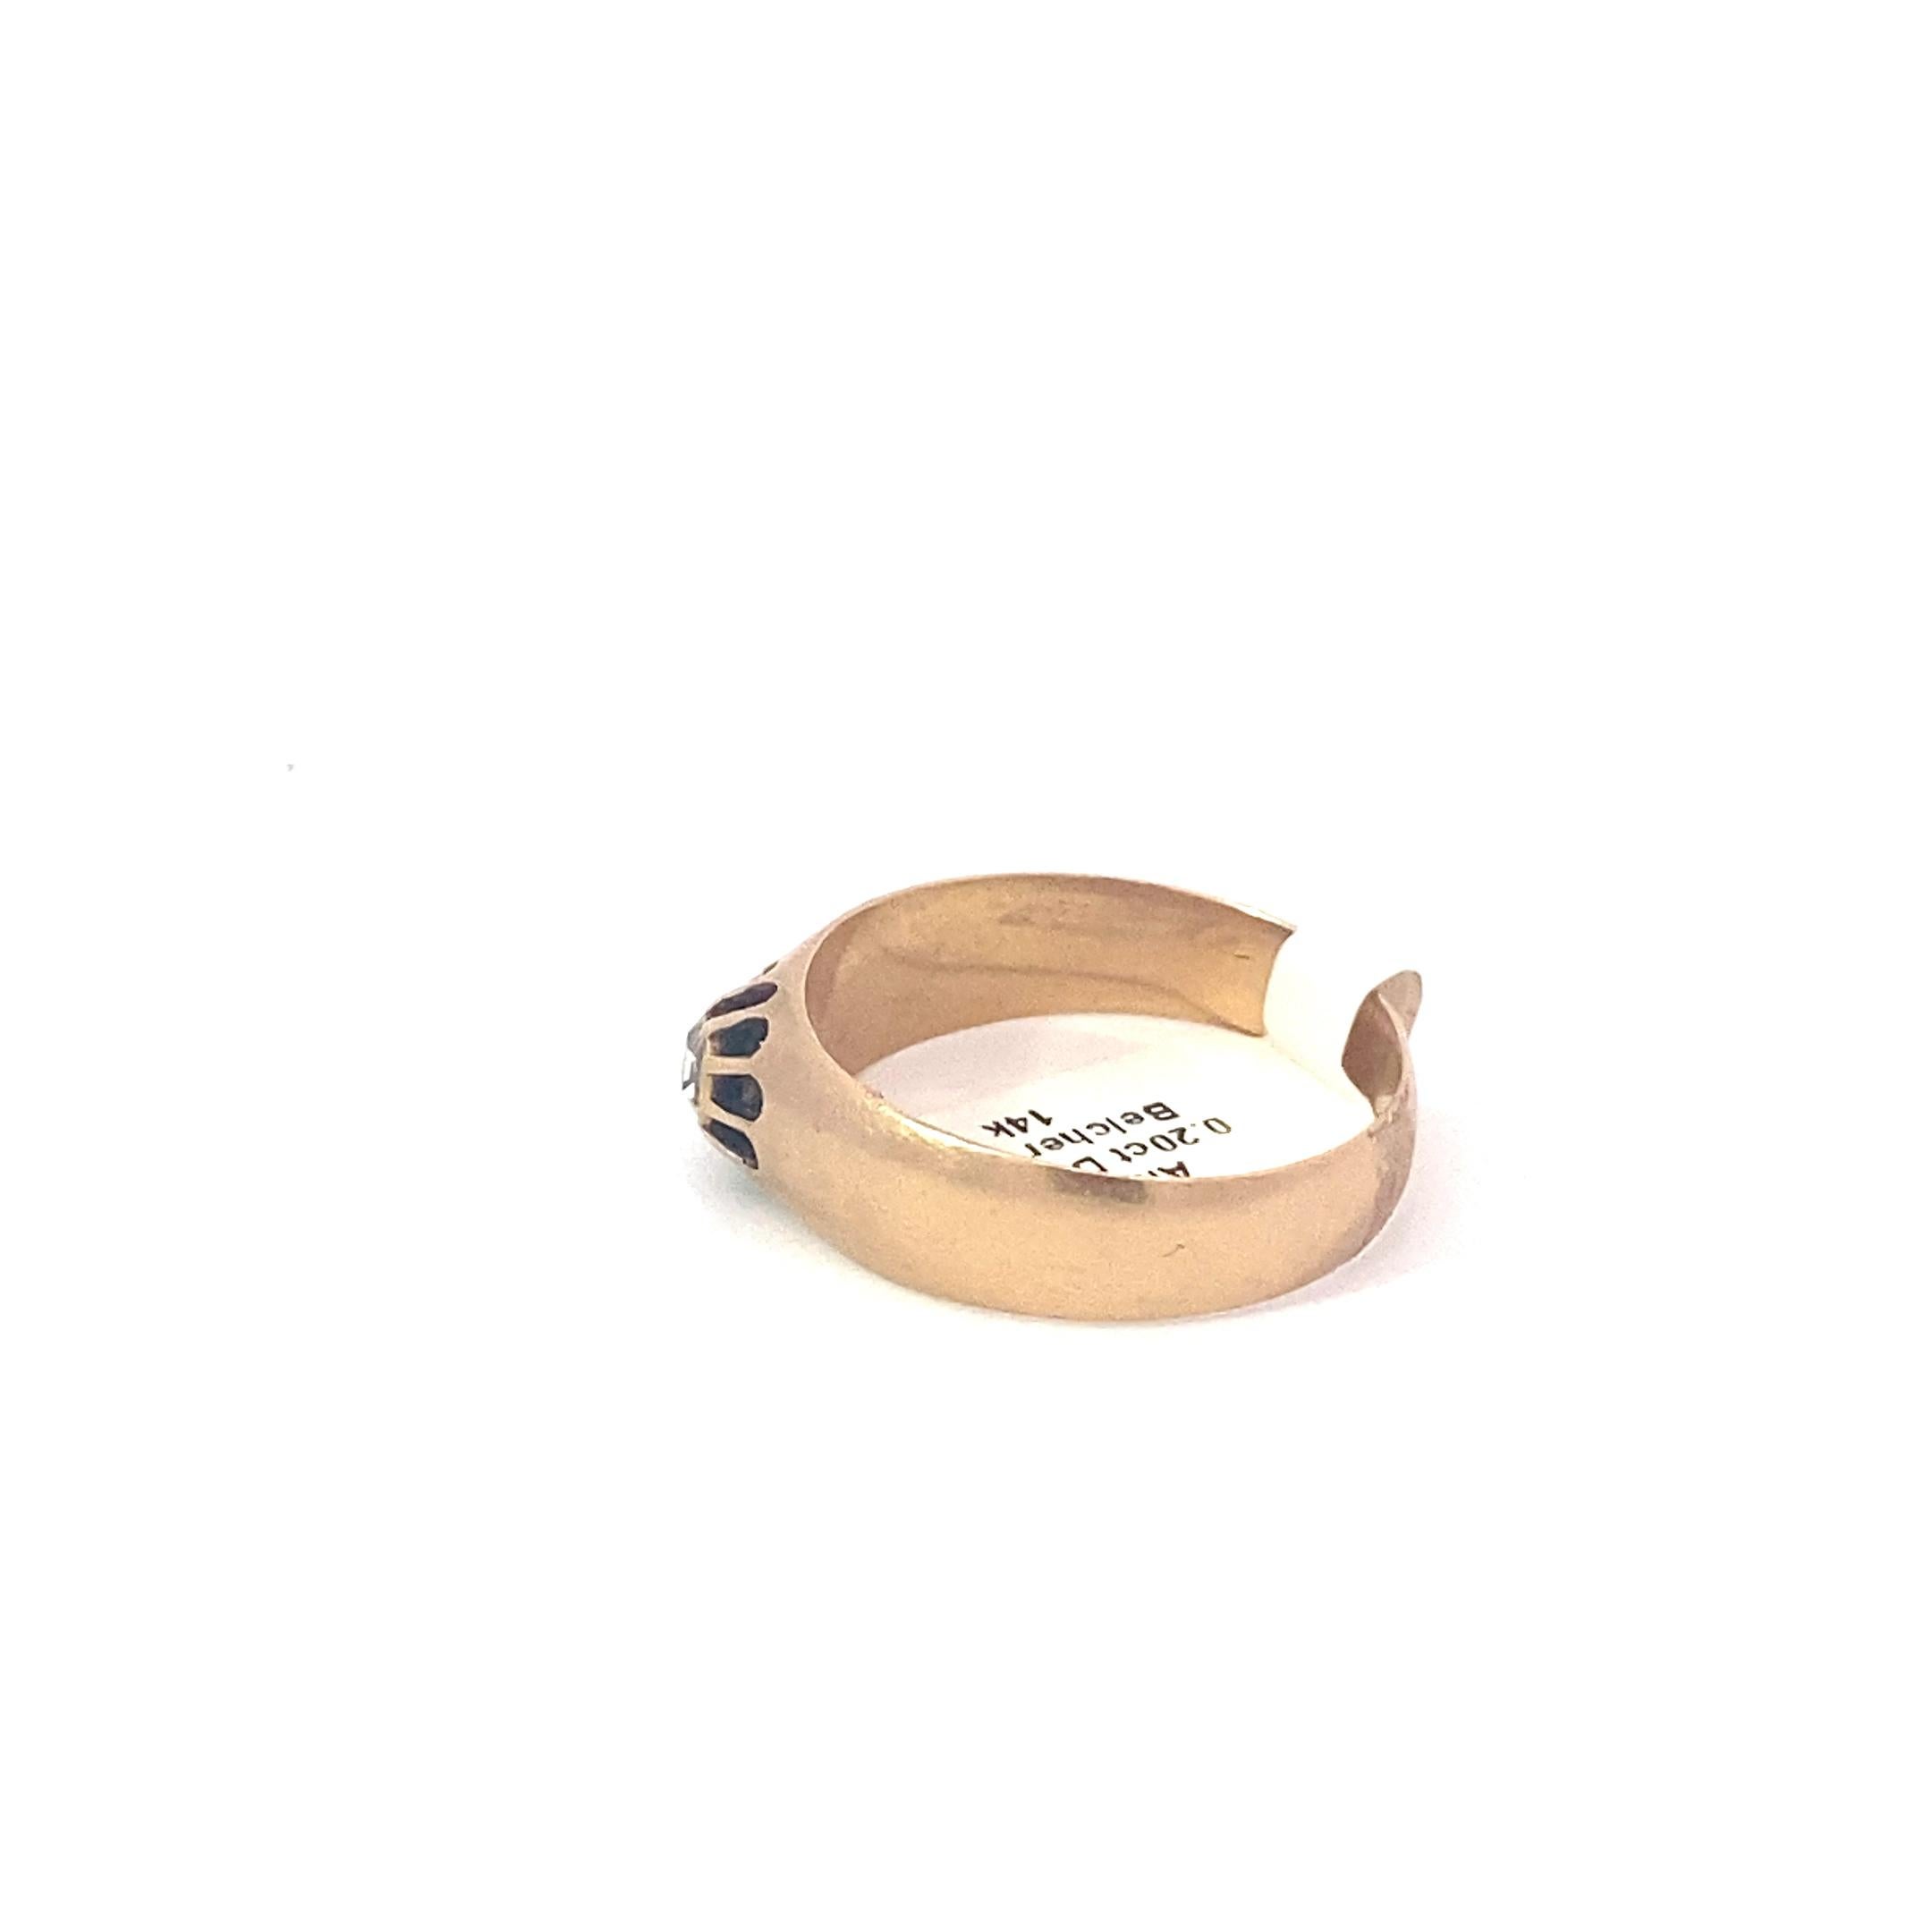 Antiker Ring mit Diamant im Rosenschliff in Lünettenfassung mit floralem Motiv. 0,2 Karat Diamant mit etwa 3,5 mm Durchmesser. Ring misst etwa Größe 11 mit einem 5 mm bis 7 mm verjüngten Band. Der Ring stammt höchstwahrscheinlich aus der